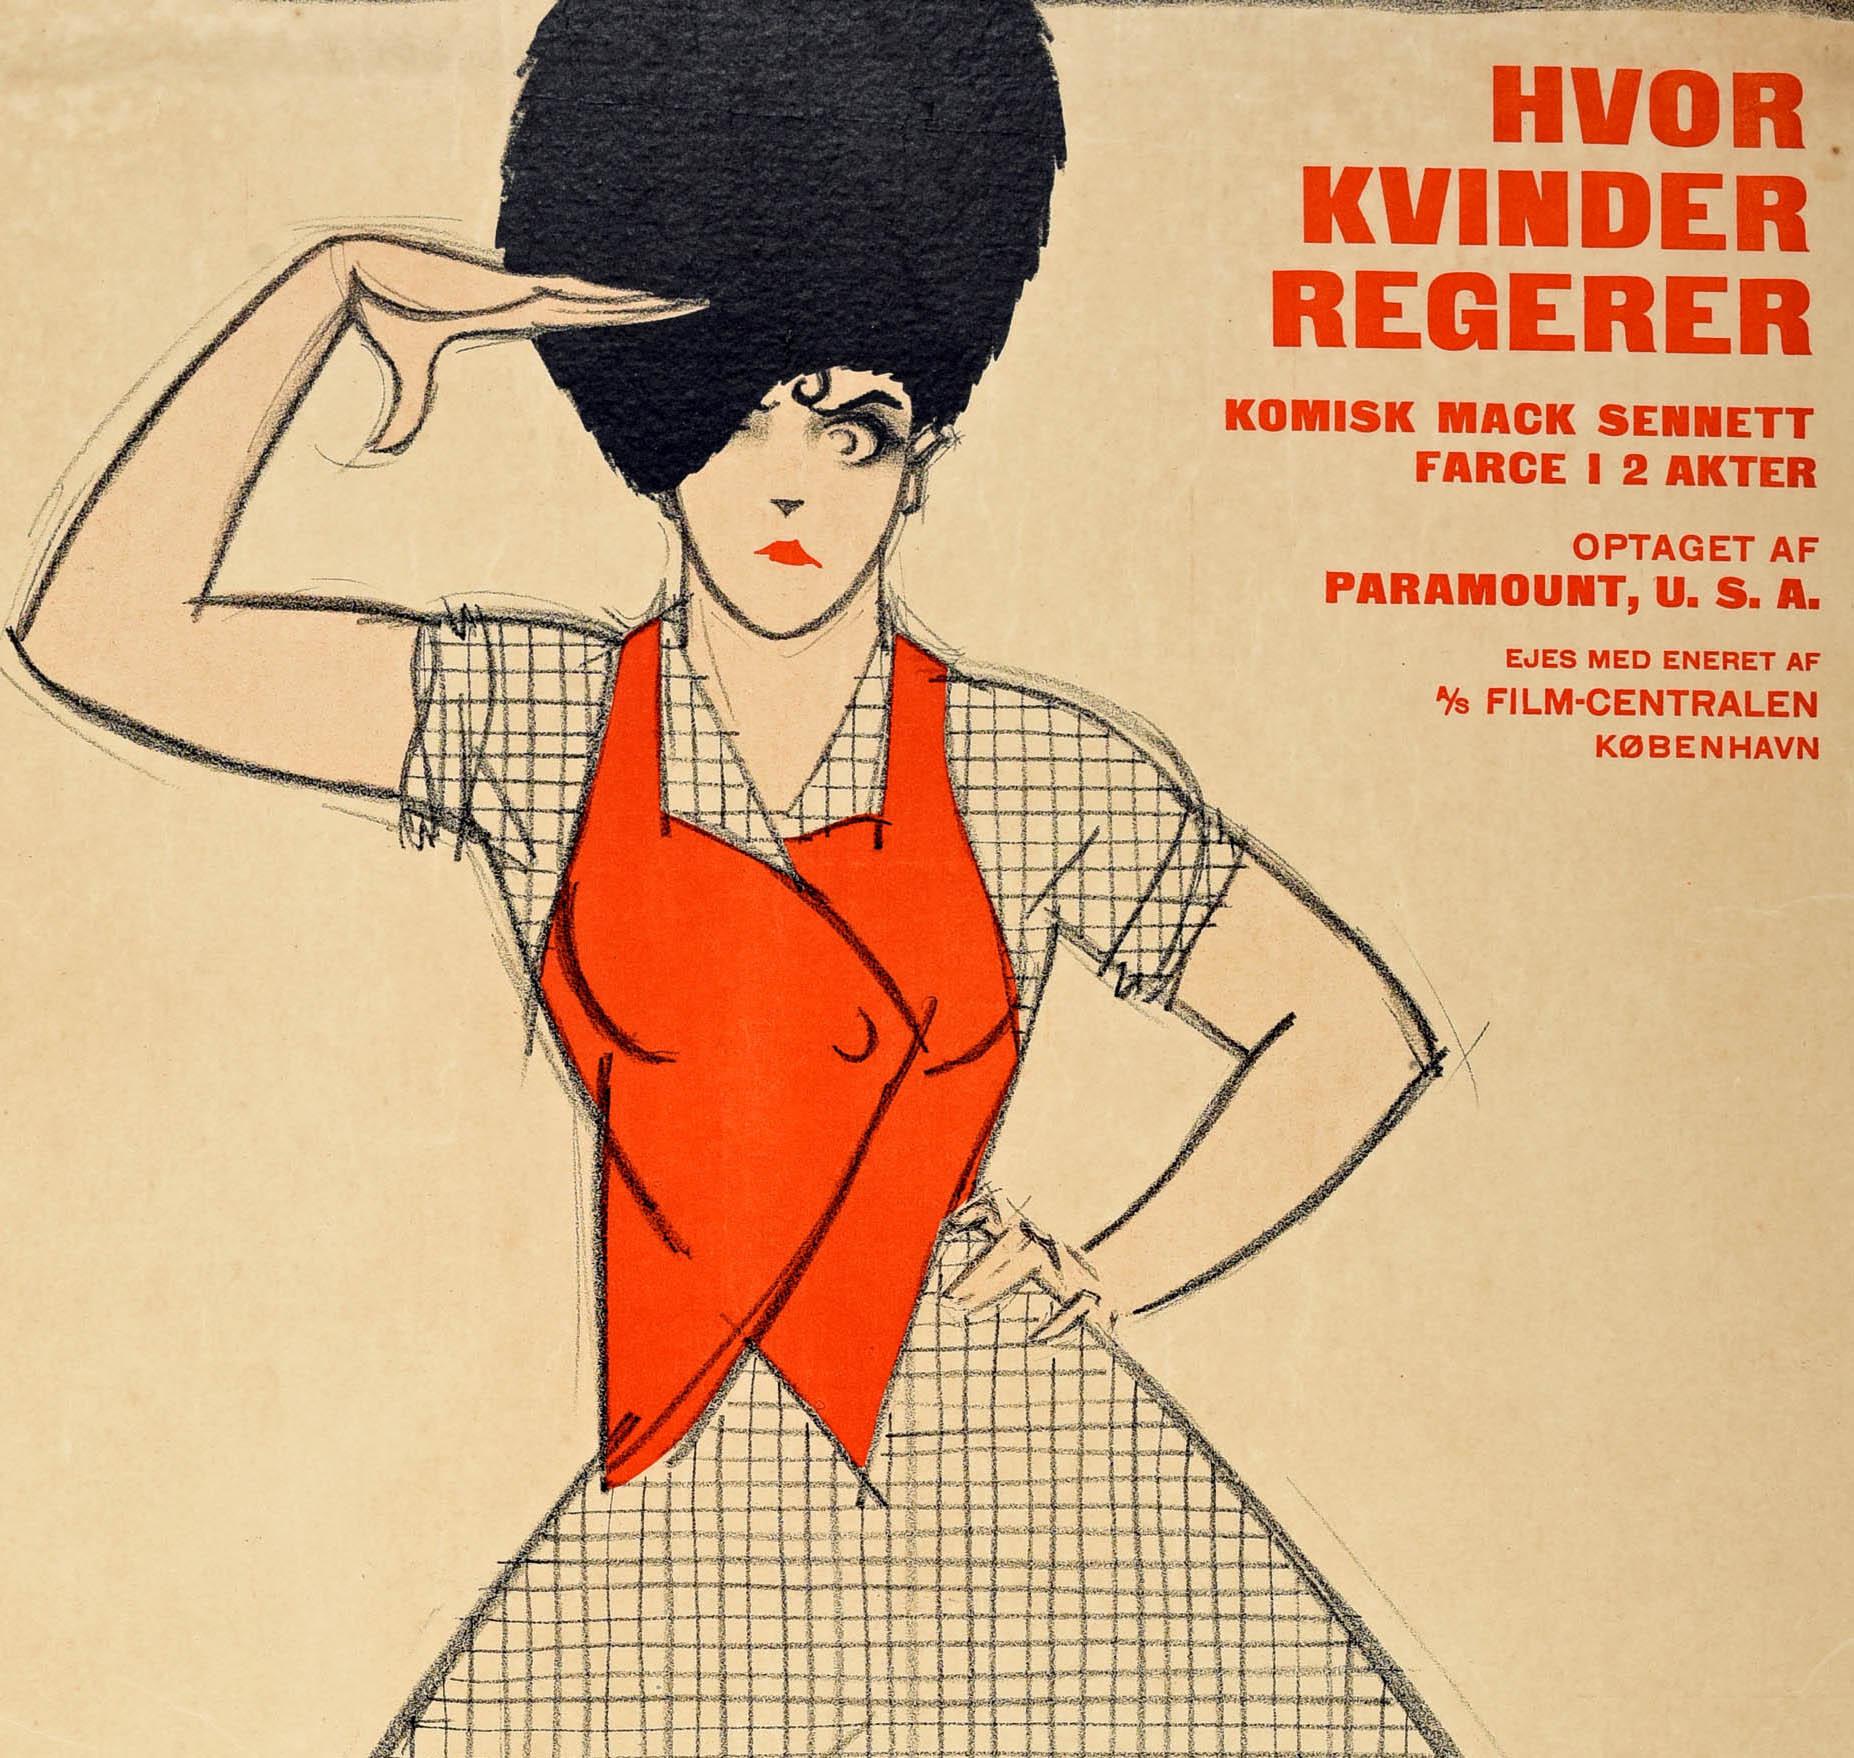 Original antique Danish movie poster for Hvor Kvinder Regerer komisk Mack Sennett farce 1 2 akter / a comedy film produced by Mack Sennett (Michael Sinnott; 1880-1960) Where Women Rule. Great artwork by the notable Danish illustrator, poster